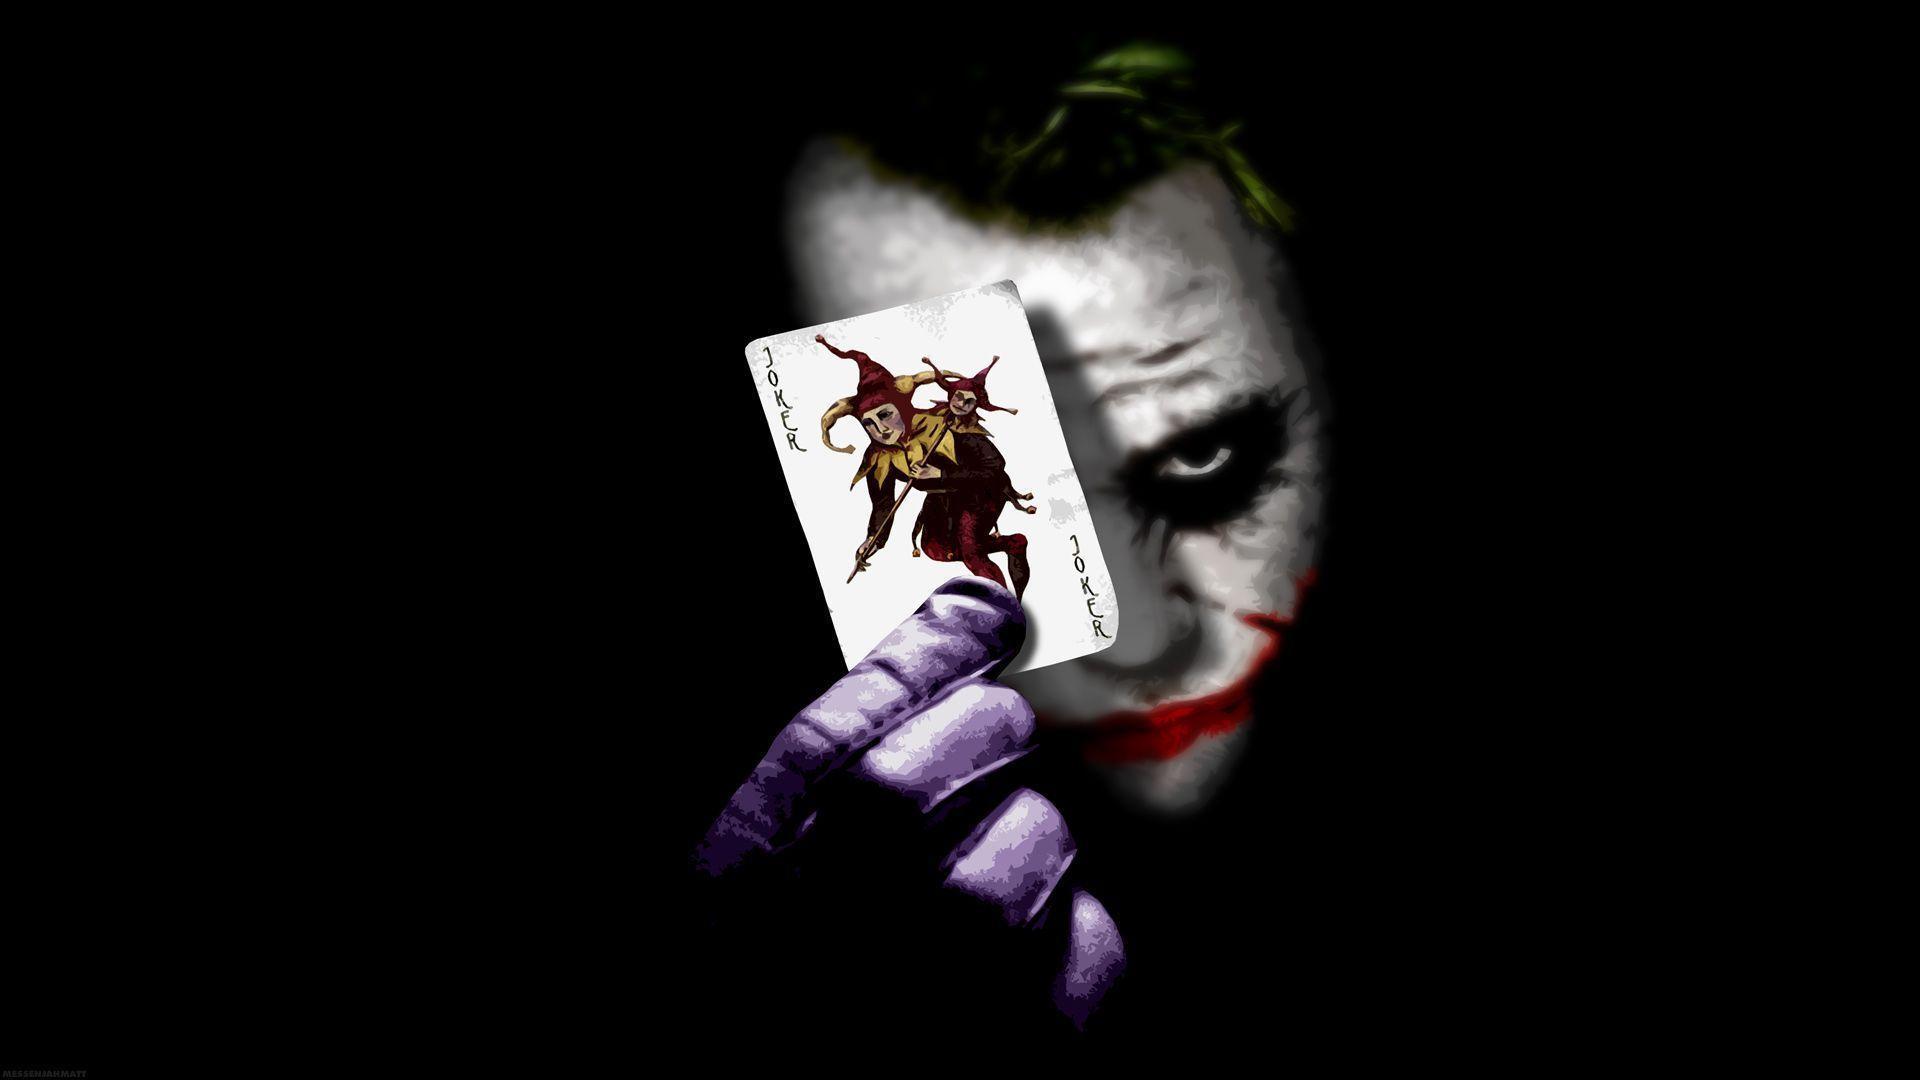 Joker Wallpaper. Batman Joker Wallpaper, Crazy Joker Wallpaper and Joker Cartoon Wallpaper